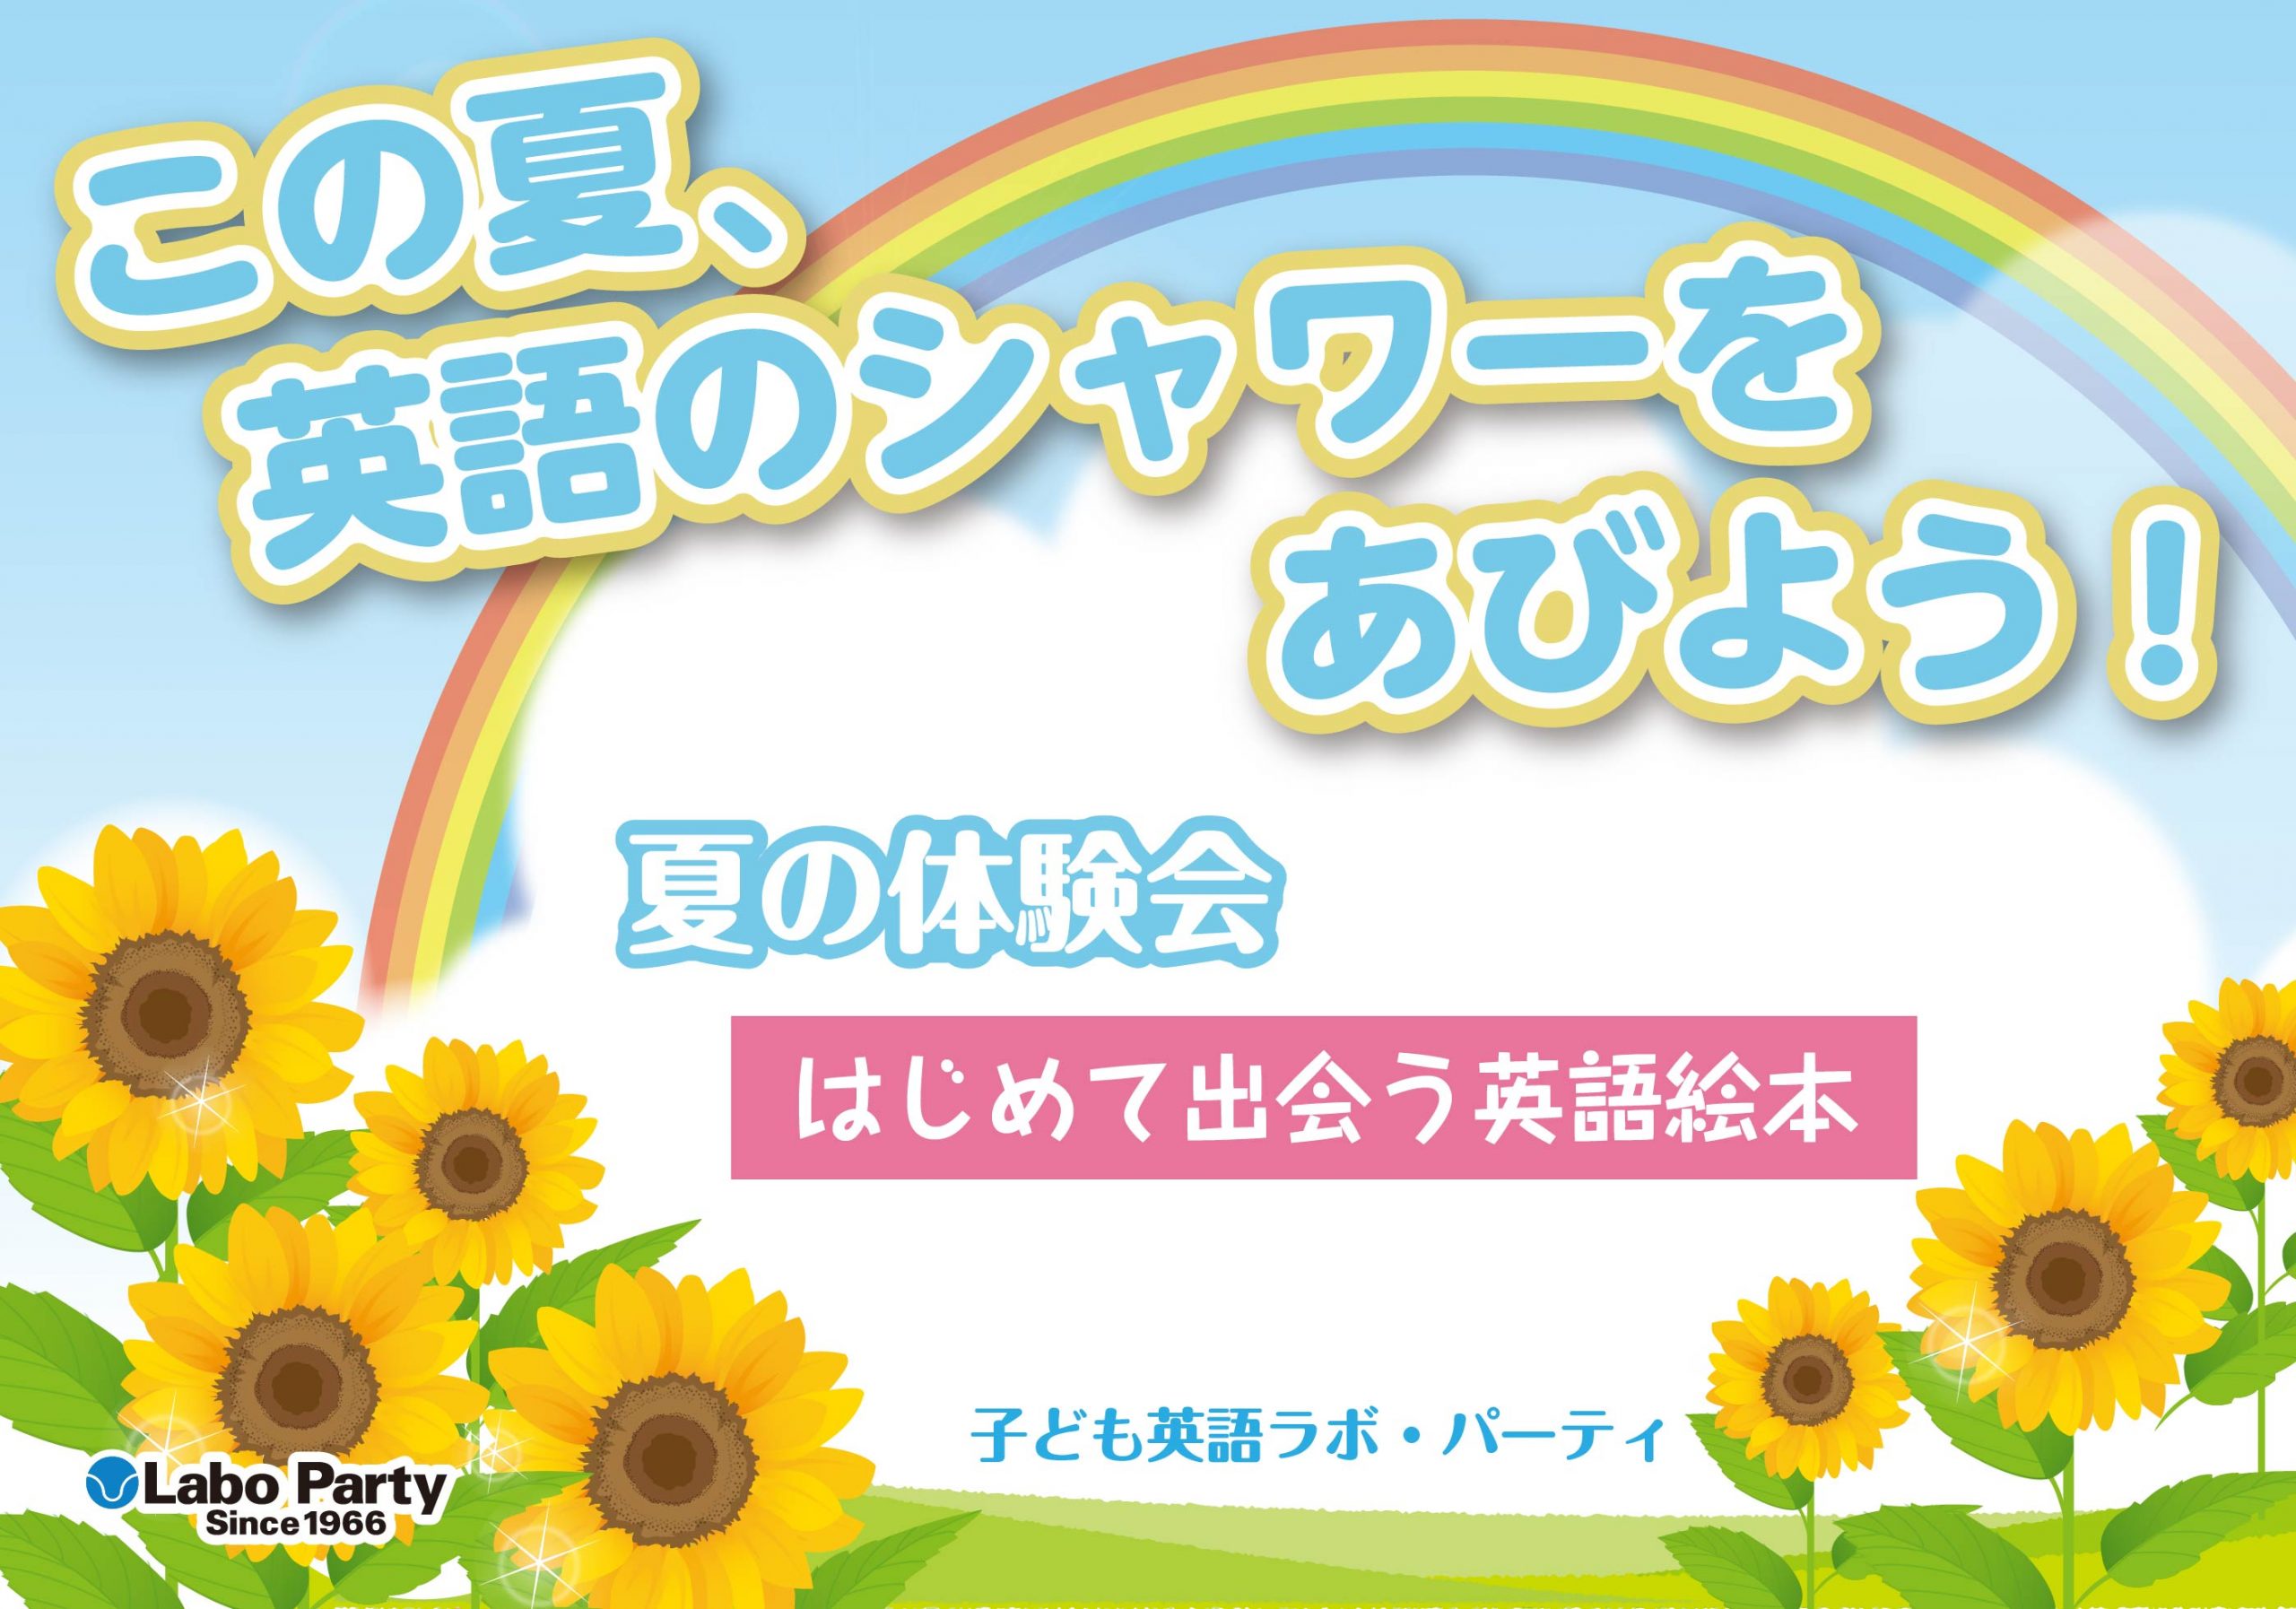 ラボ・パーティ 川口市柳根町教室(若松パーティ)のこの夏、英語のシャワーをあびよう！